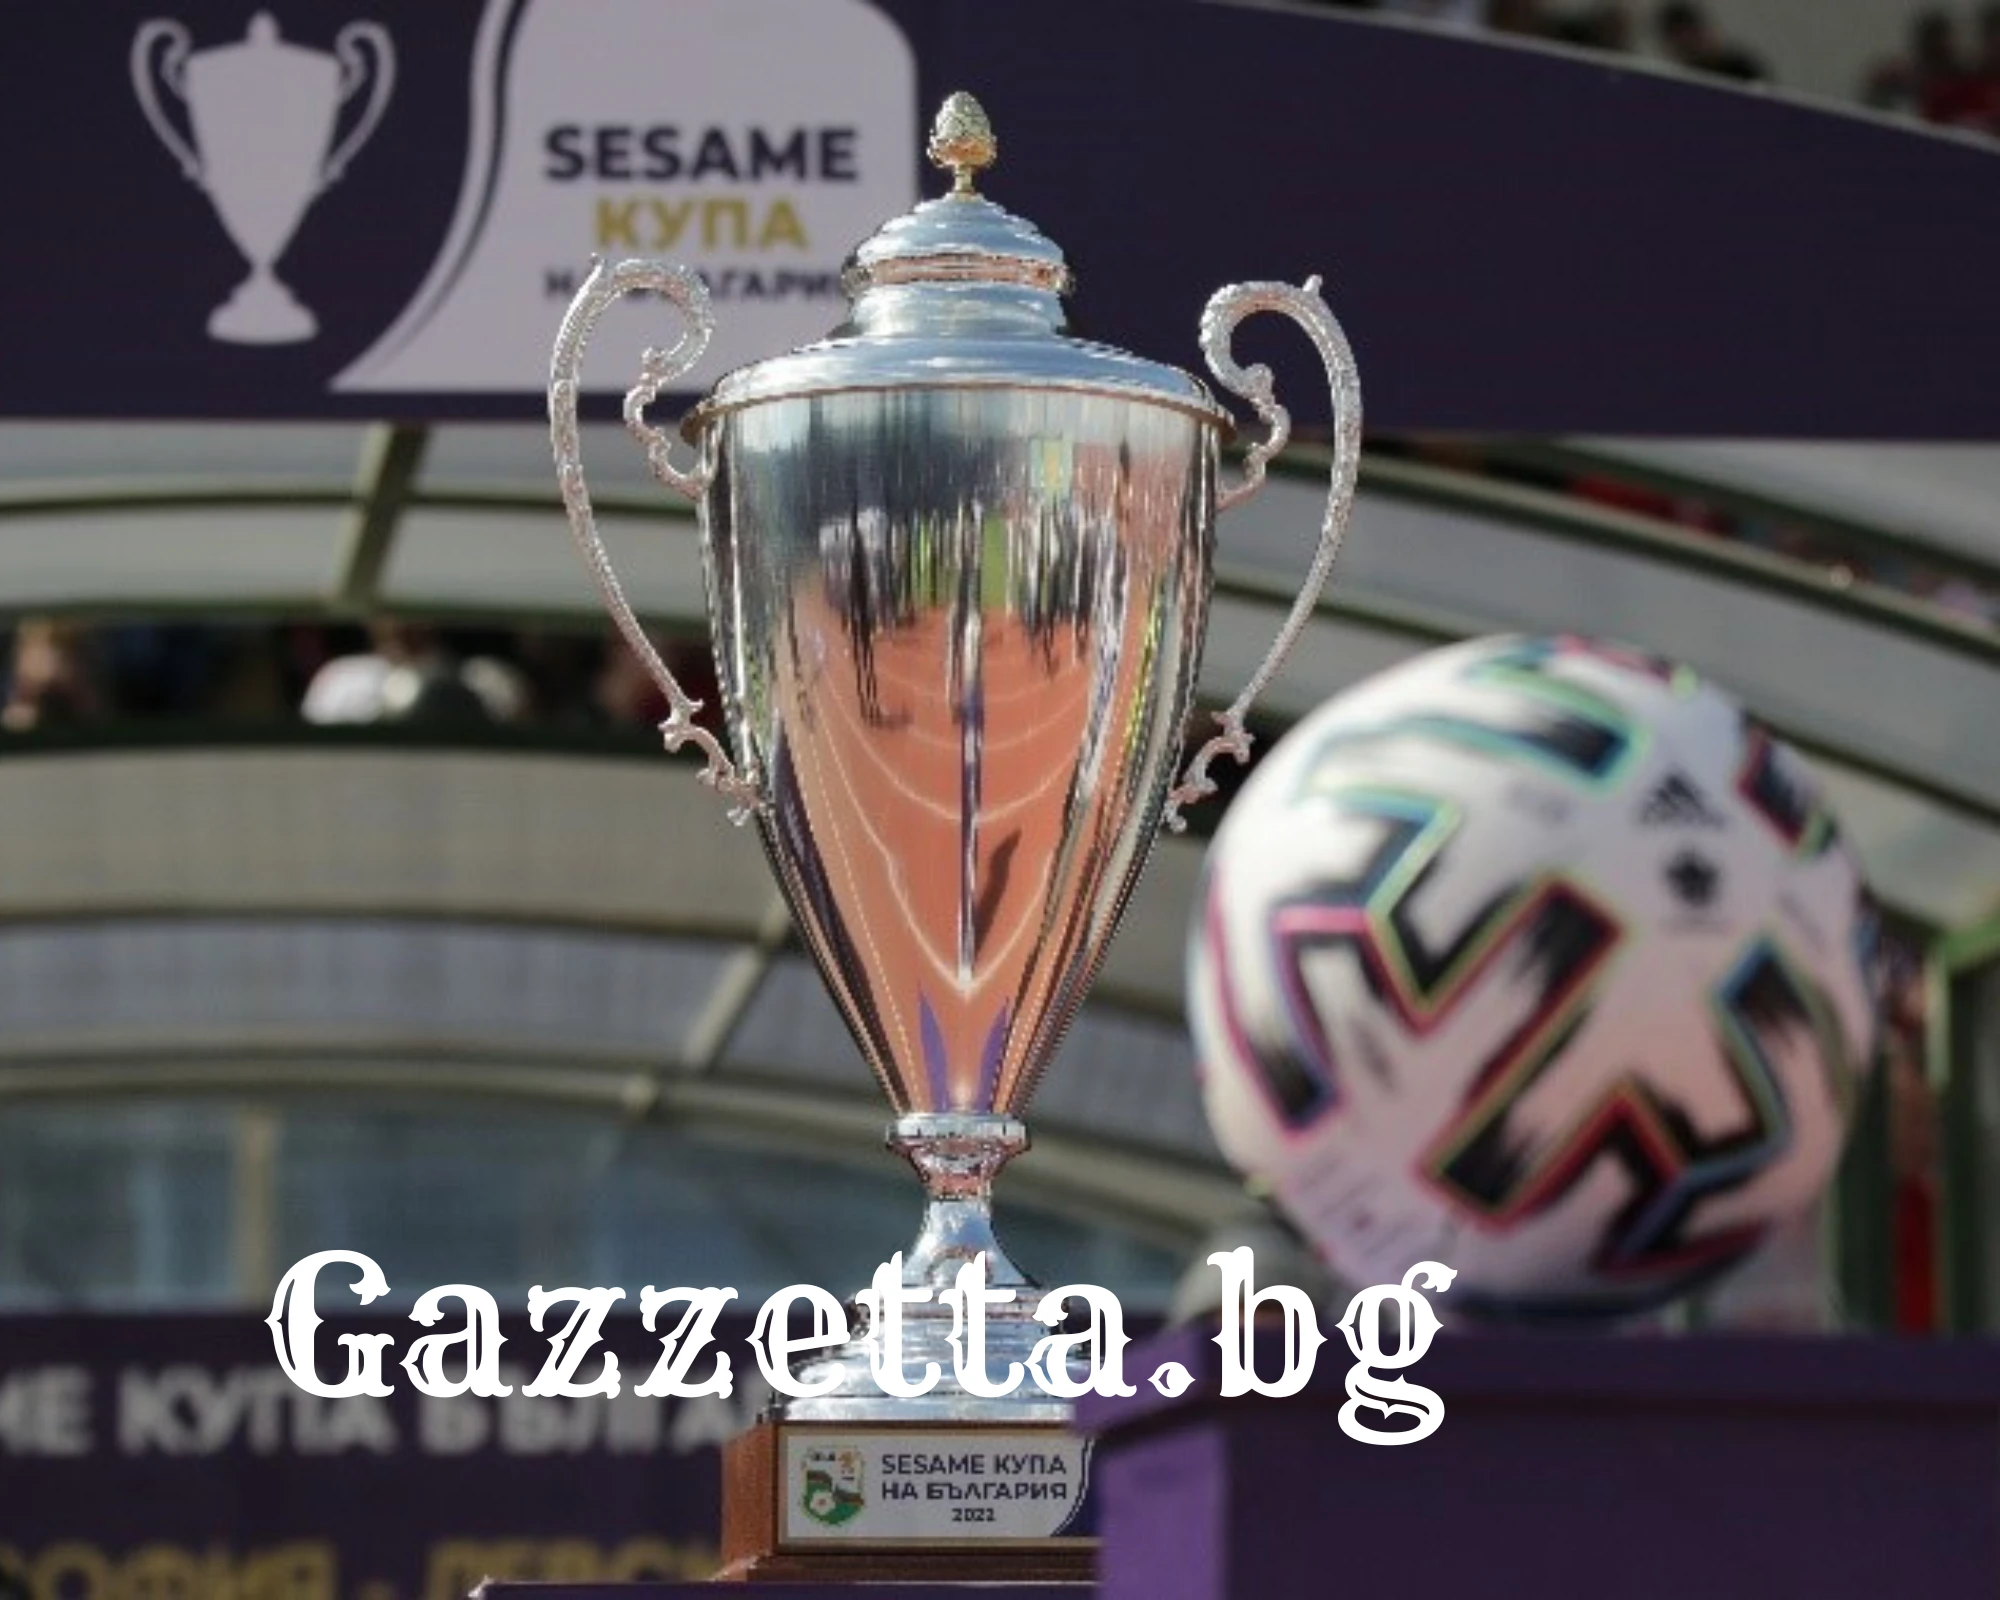 Локомотив София и Славия дават началото на 1/4-финалите в Сезам Купа на България